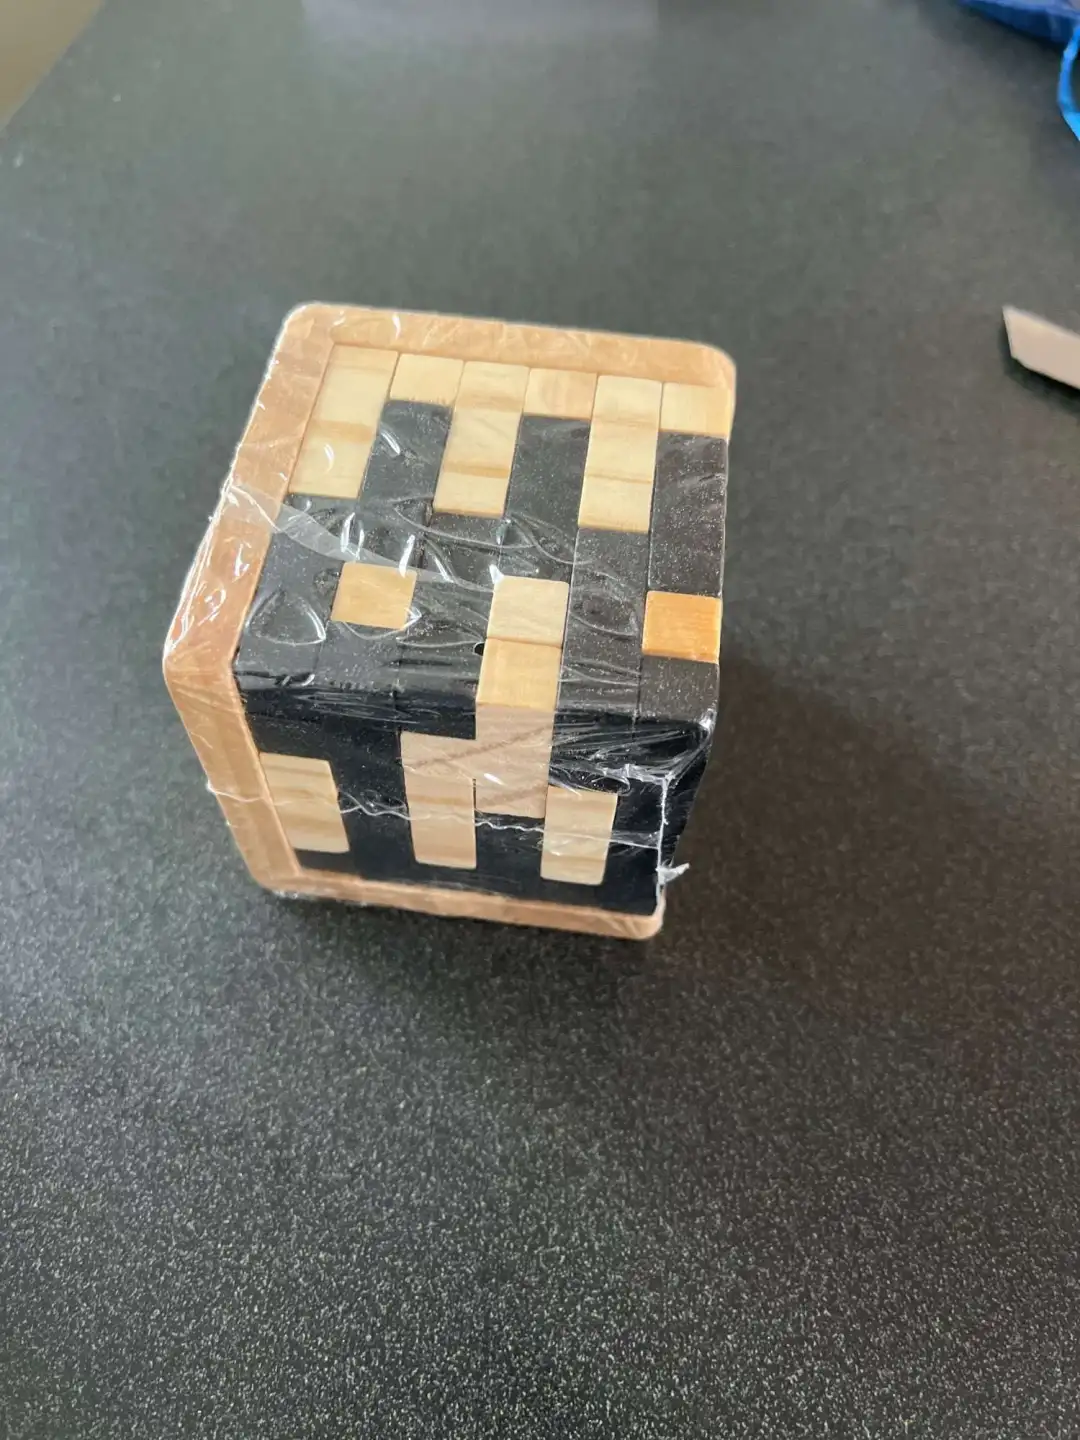 3d madeira quebra-cabeças iq quebra-cabeça 54t cubo de madeira  intertravamento jogo quebra-cabeça aprendizagem brinquedo educacional para  adultos crianças quebra-cabeça entusiastas presente